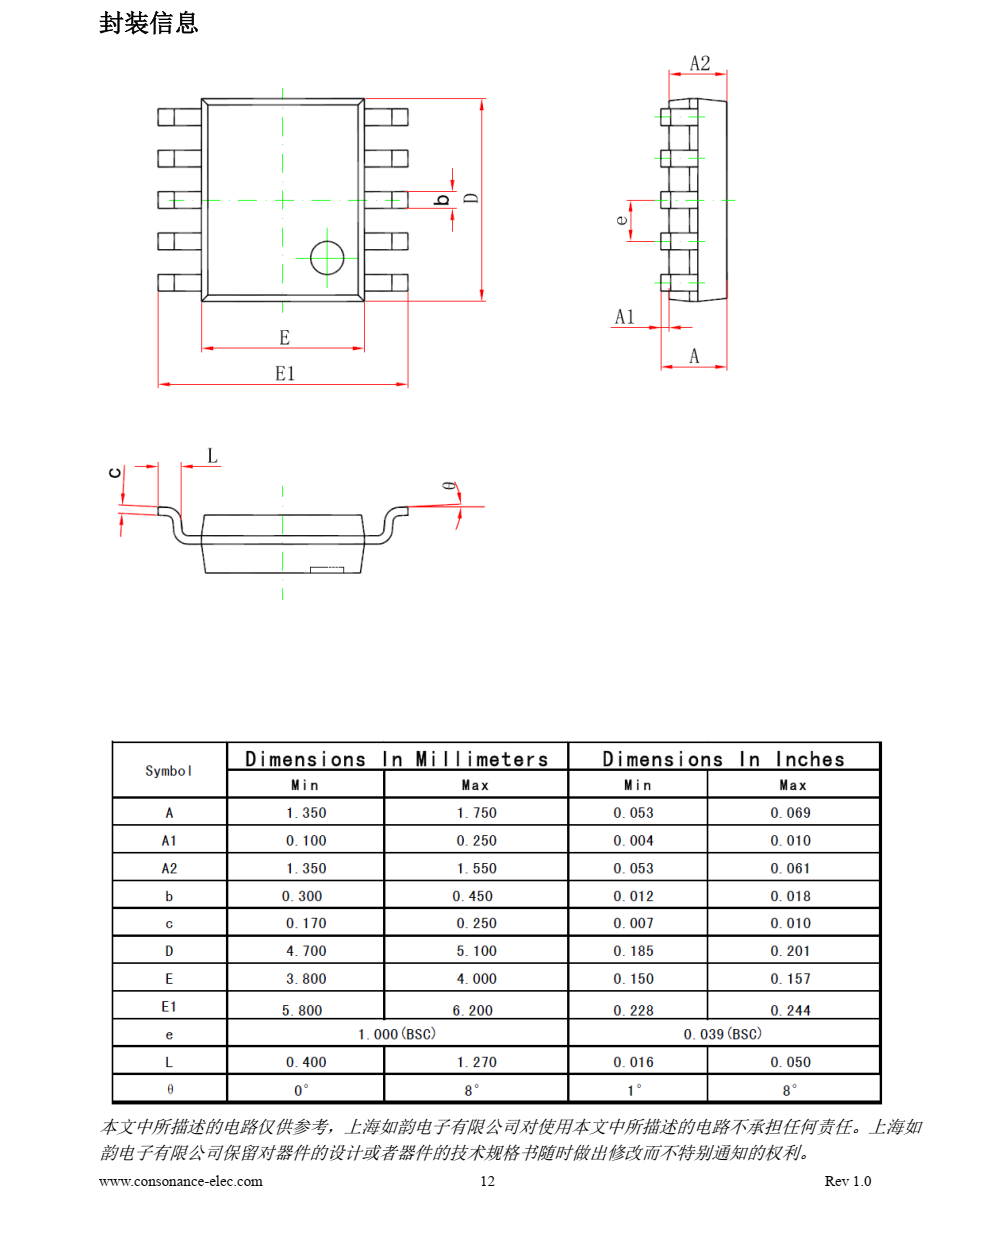 磷酸铁锂电池充电管理芯片CN3765